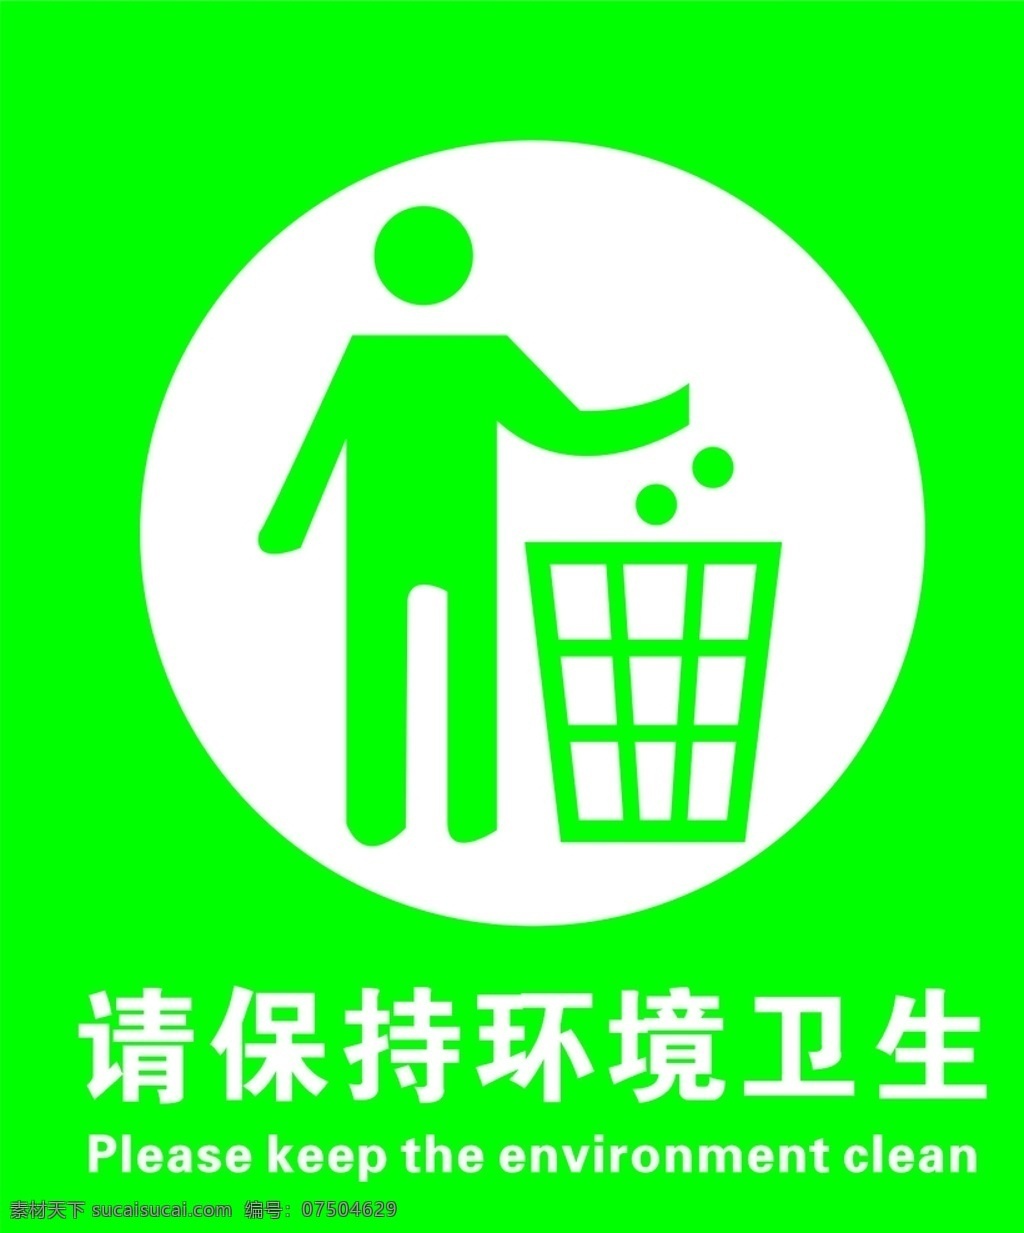 垃圾桶定位 请保持环境 定位标识 环境卫生 垃圾桶标识 标志图标 其他图标